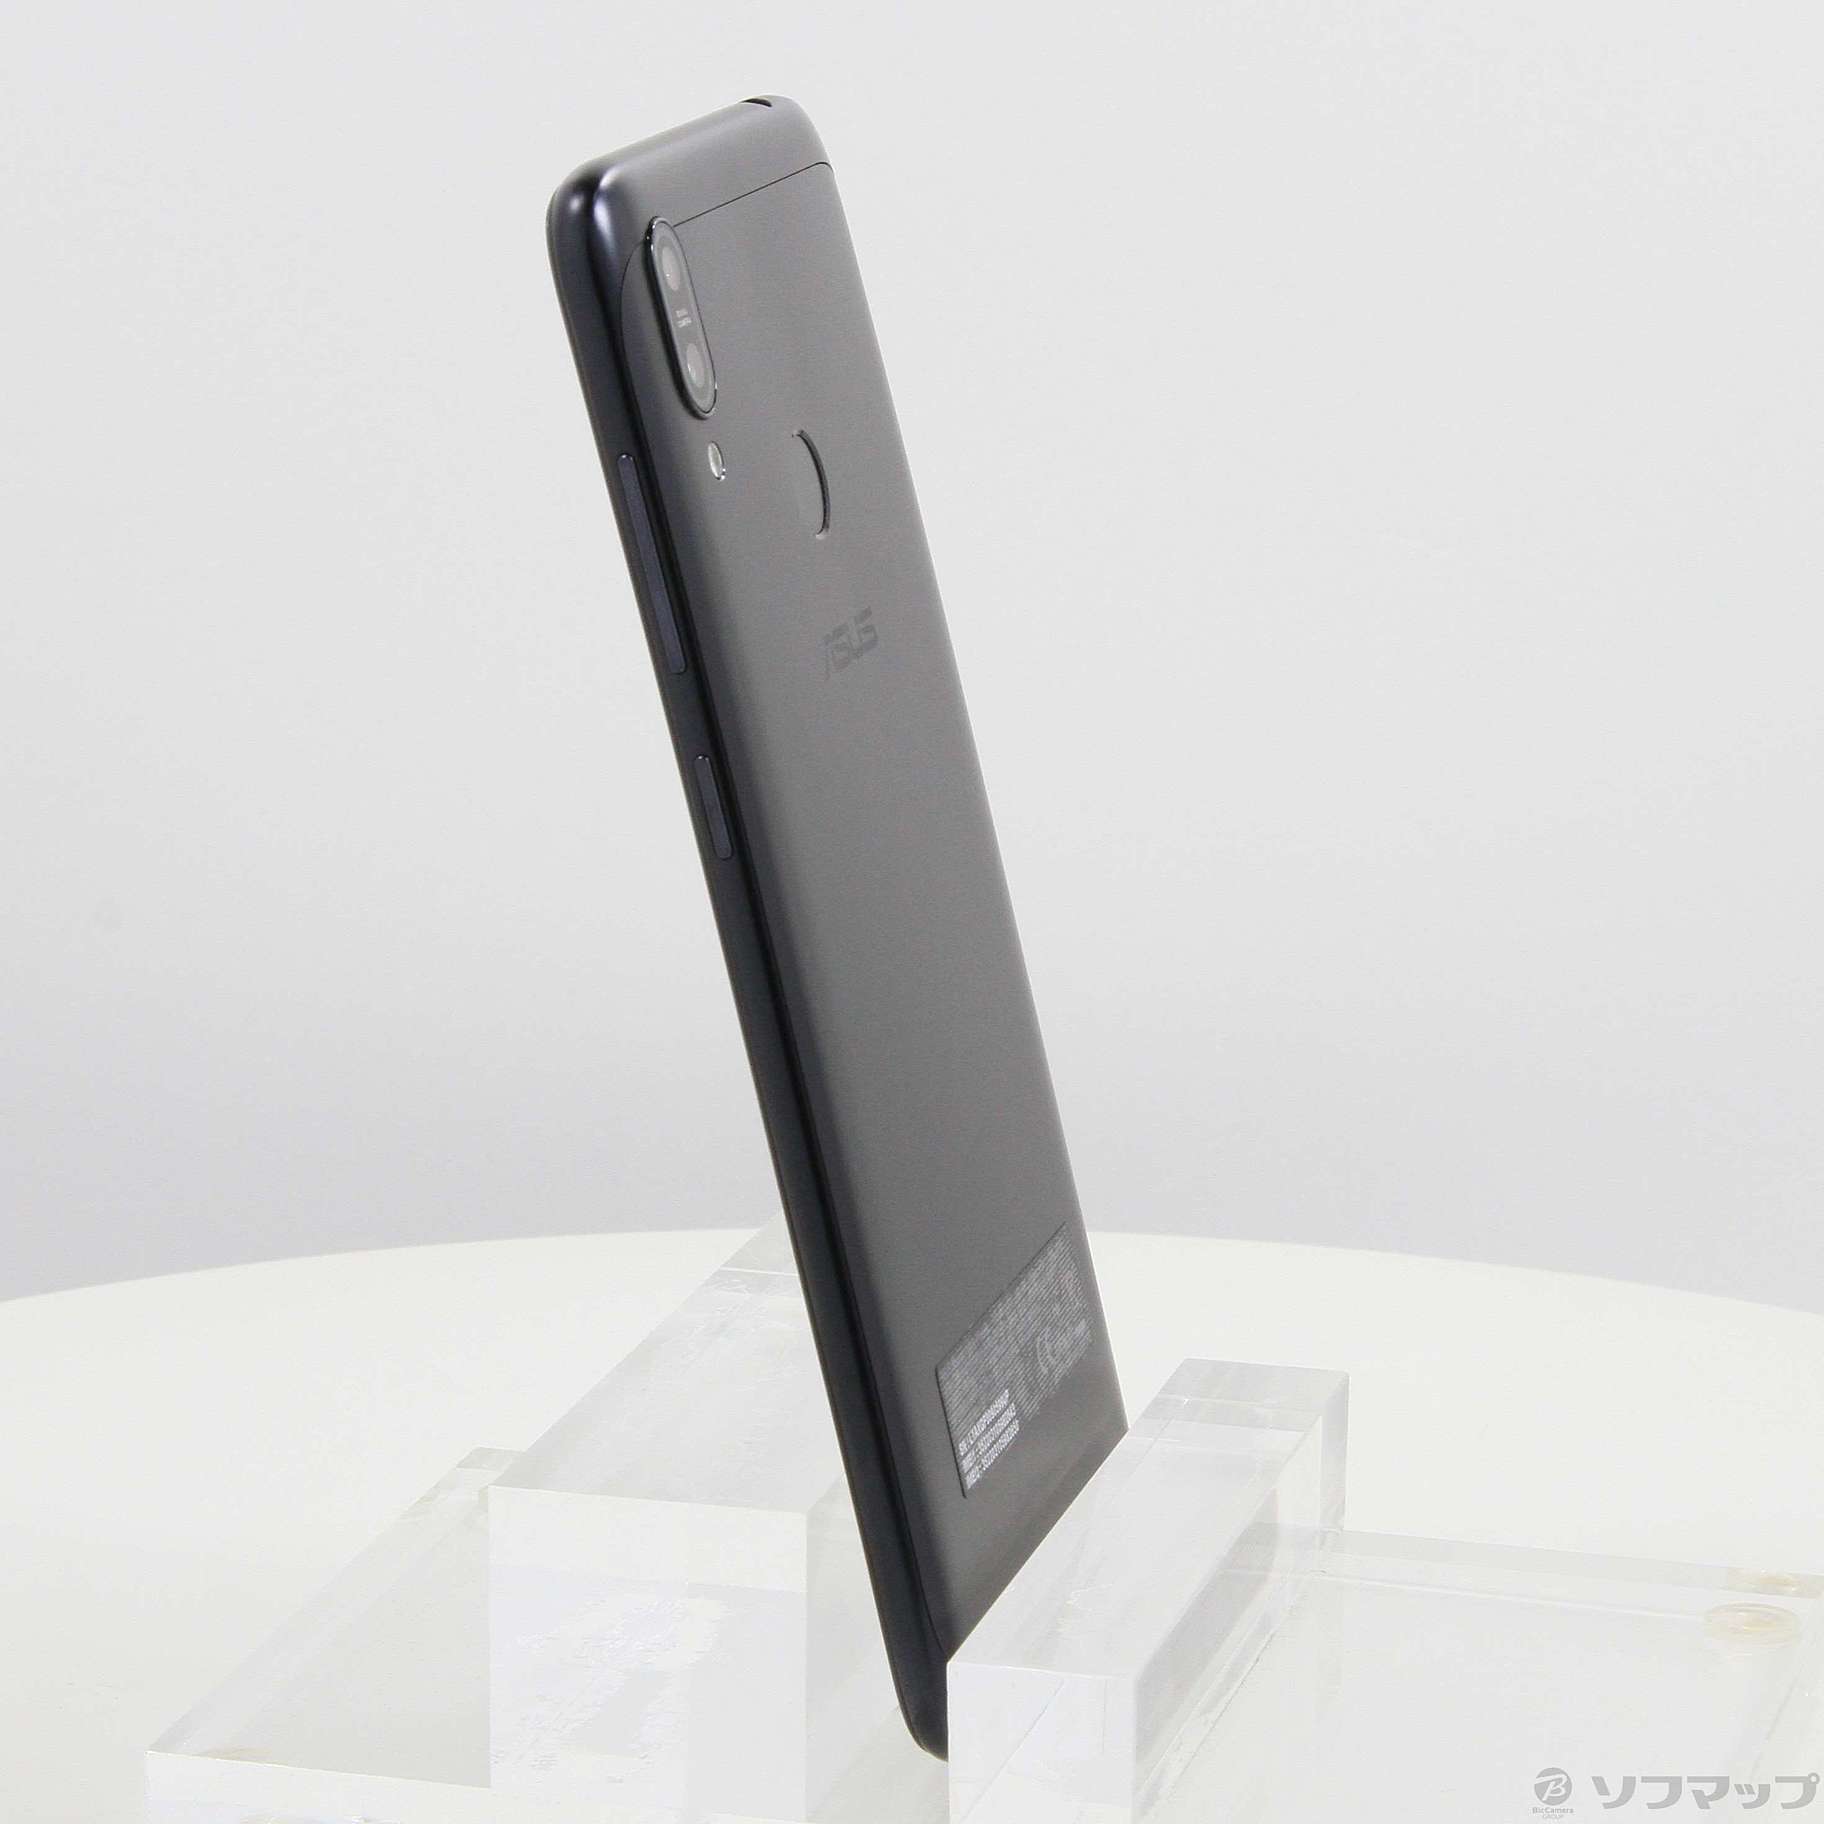 【未開封】Zenfone Max (M2) 64GB ミッドナイトブラック